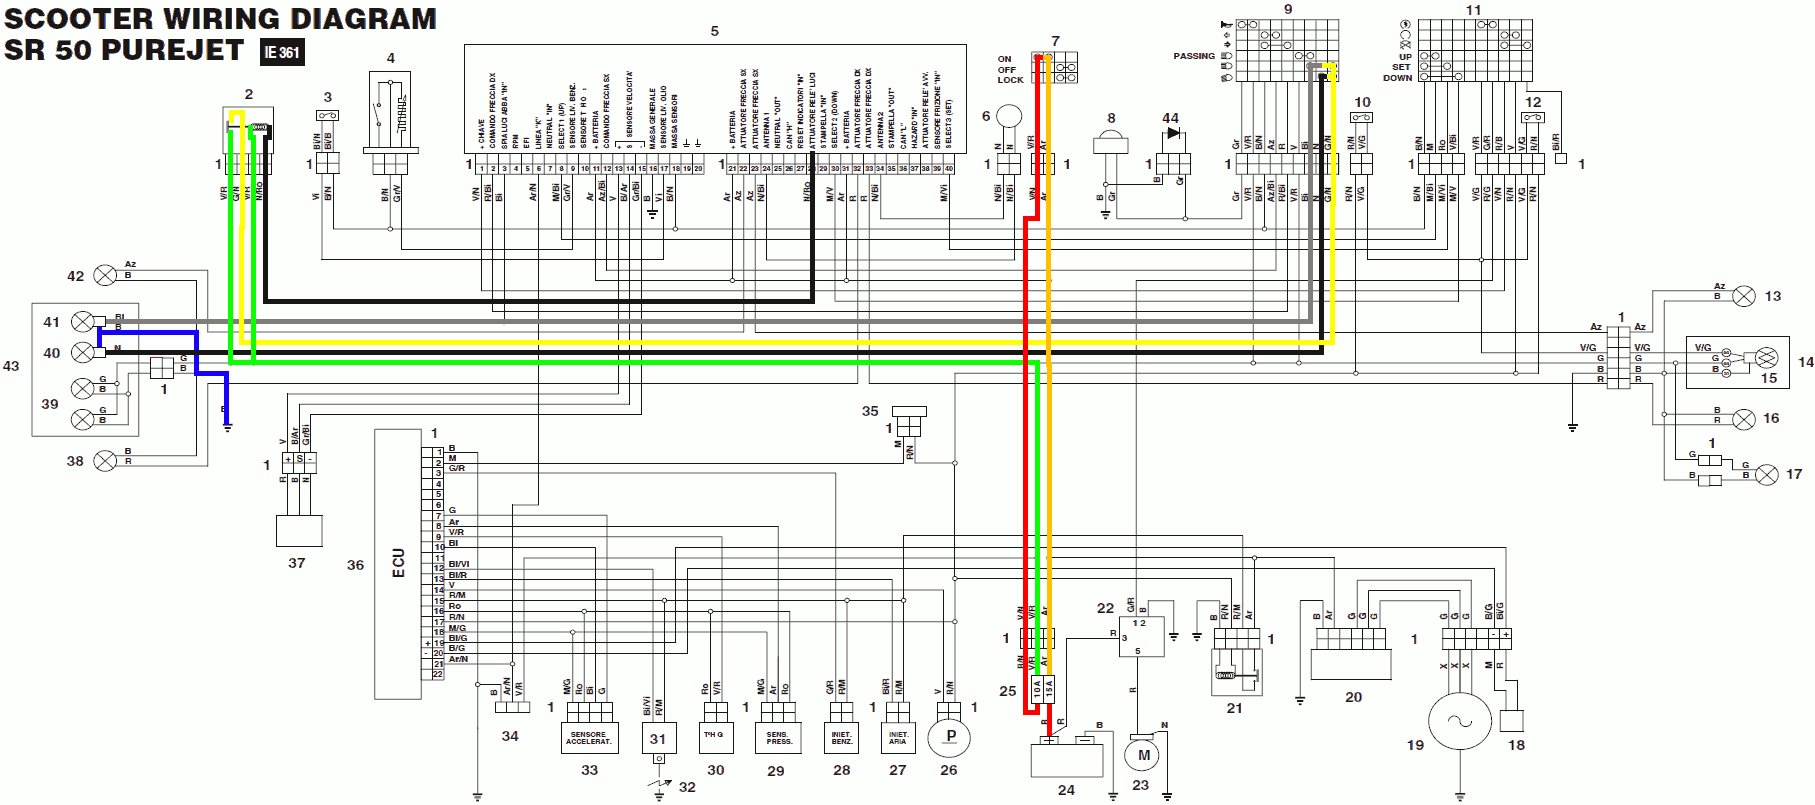 Устройство скутера и расположение основных узлов скутера - инструкция скутеров